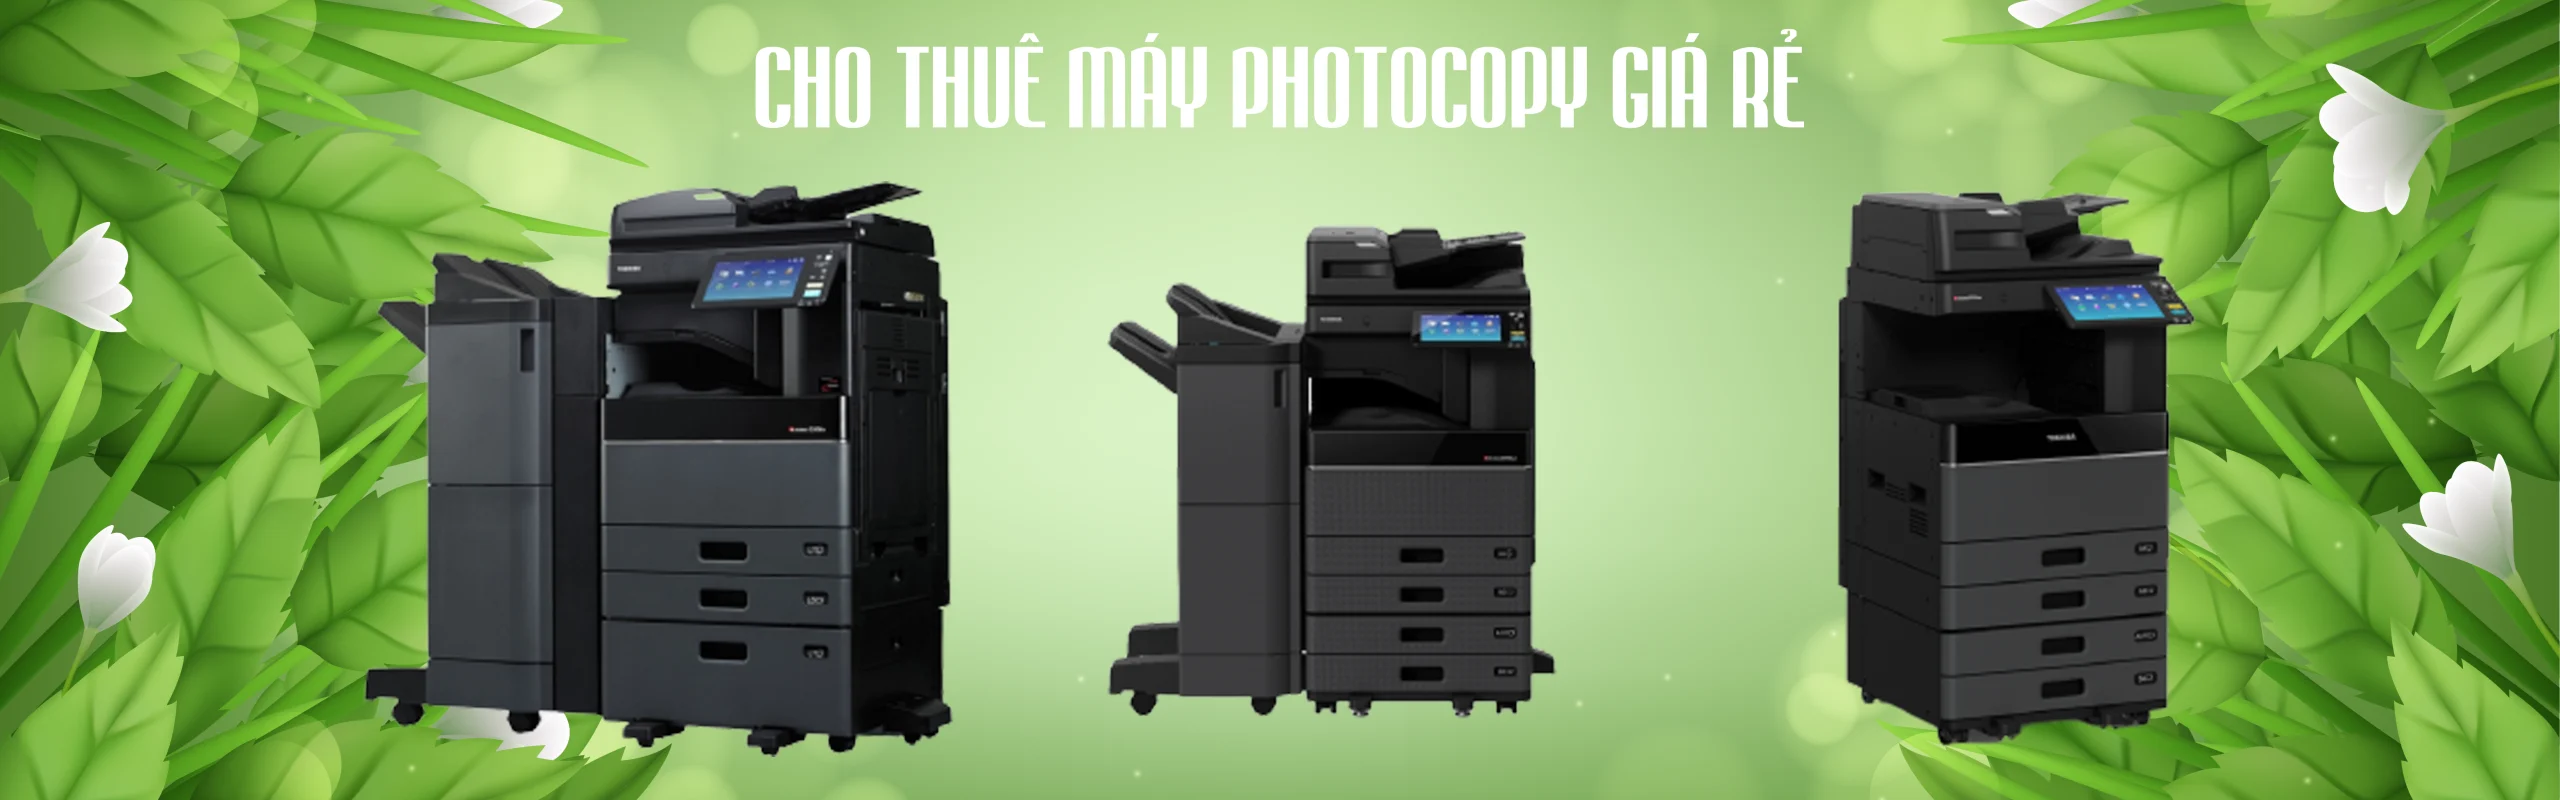 thuê máy photocopy giá rẻ chỉ 650,000 vnđ/tháng